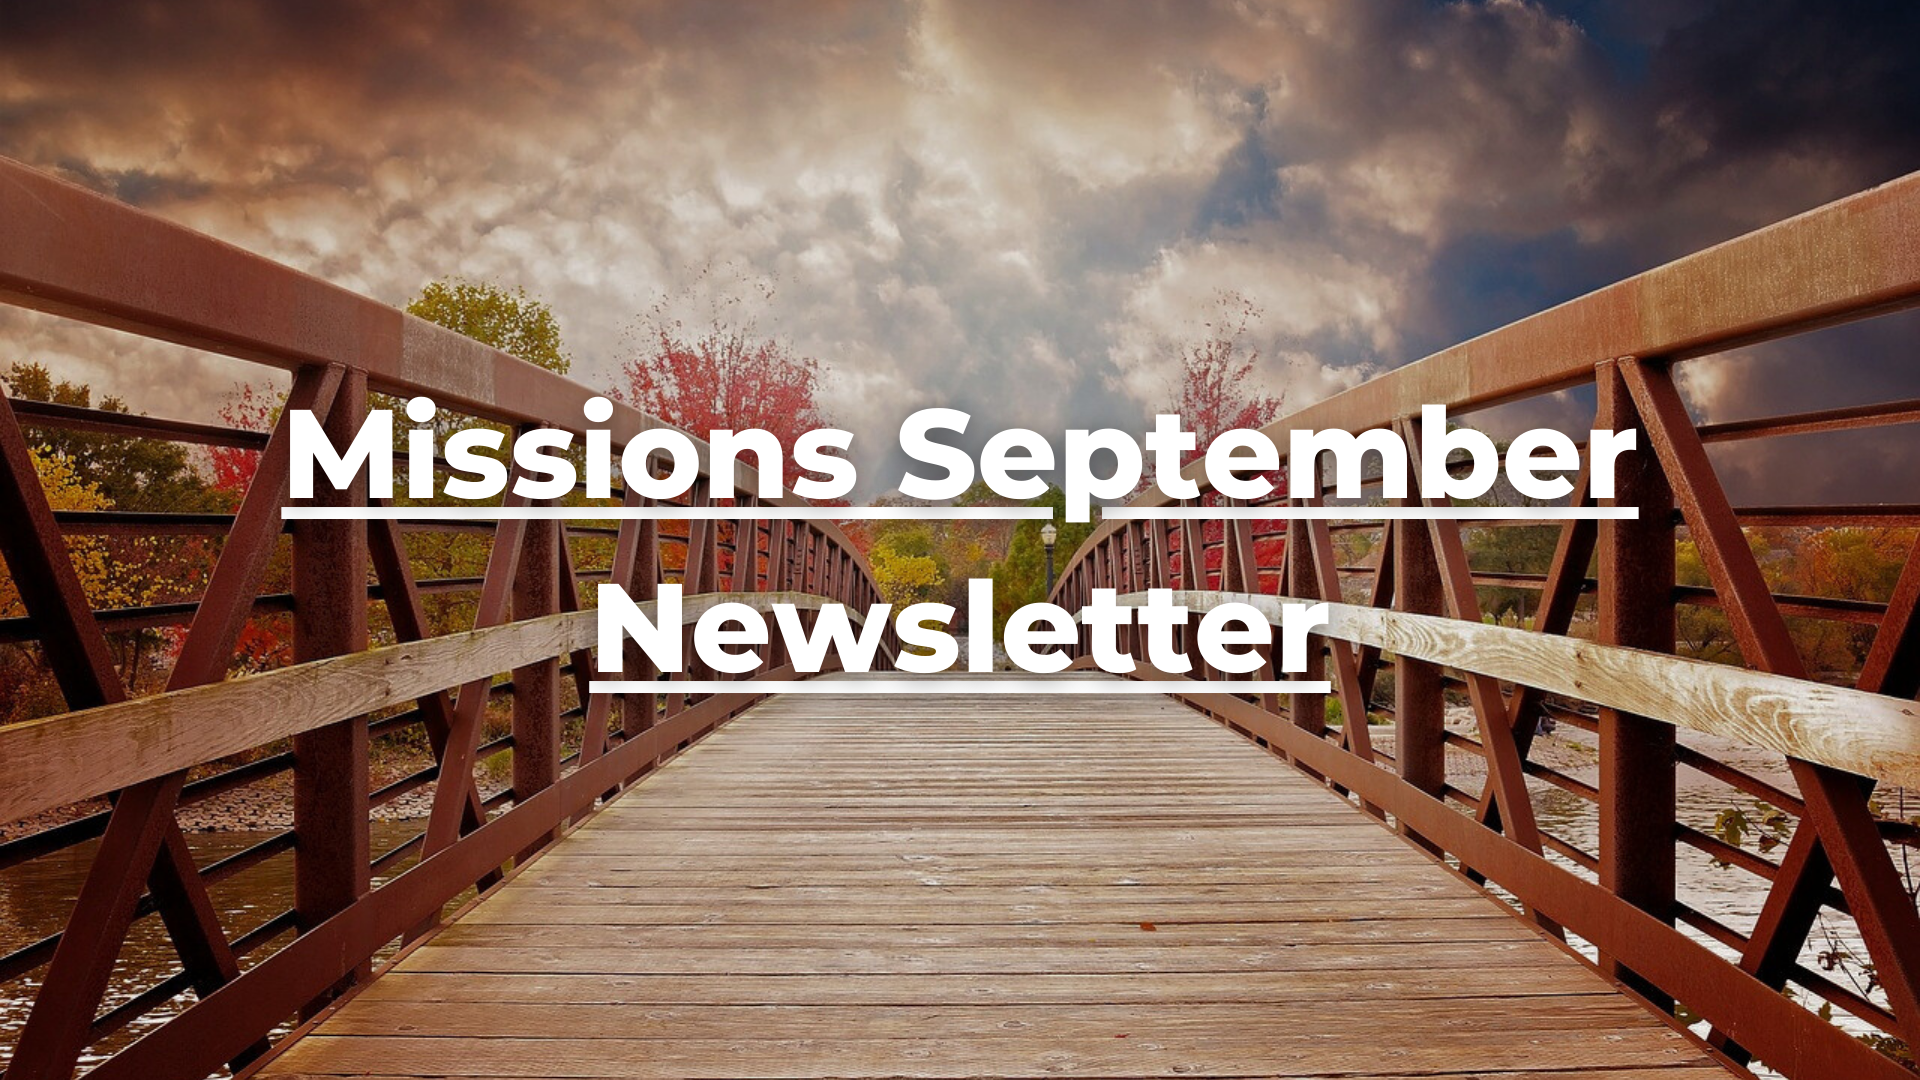 Missions September Newsletter 500x500 (Desktop Wallpaper).png